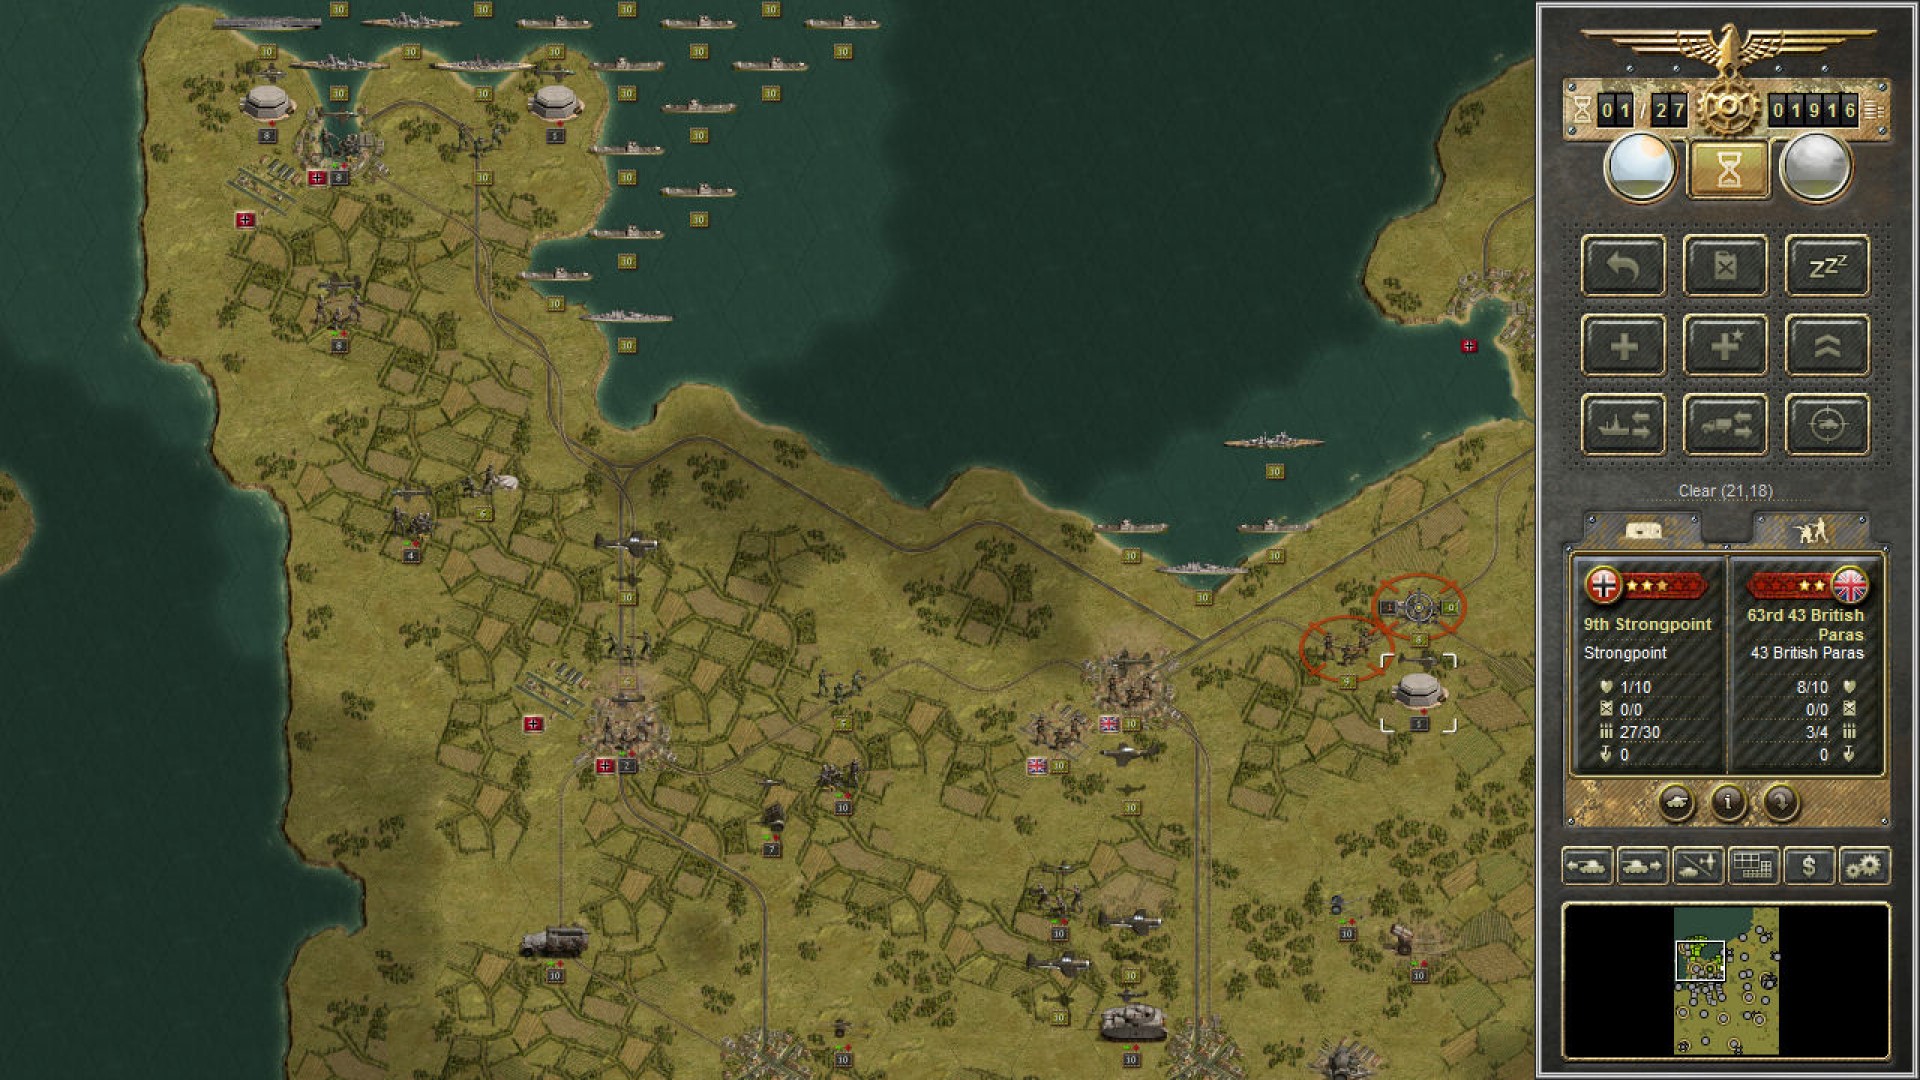 최고의 모바일 전쟁 게임 : Panzer Corps. 이미지는 ITT에 다양한 군용 부대가 퍼져있는지도를 보여줍니다